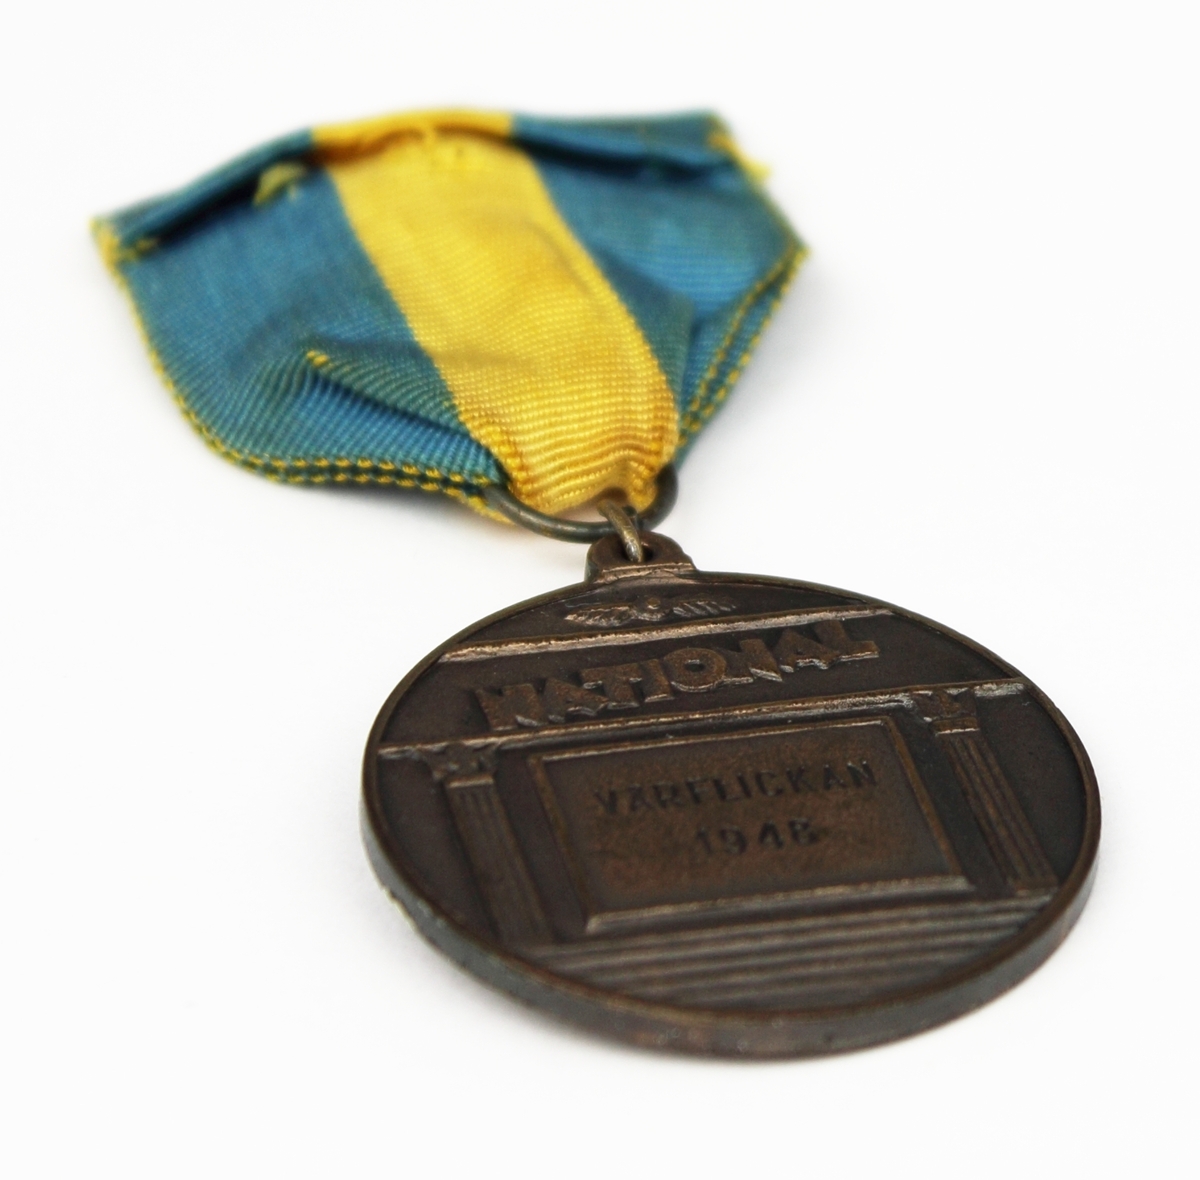 Medalj i brons fäst på blågult band. Medaljen har rund form med en naken kvinna i relief på framsidan.